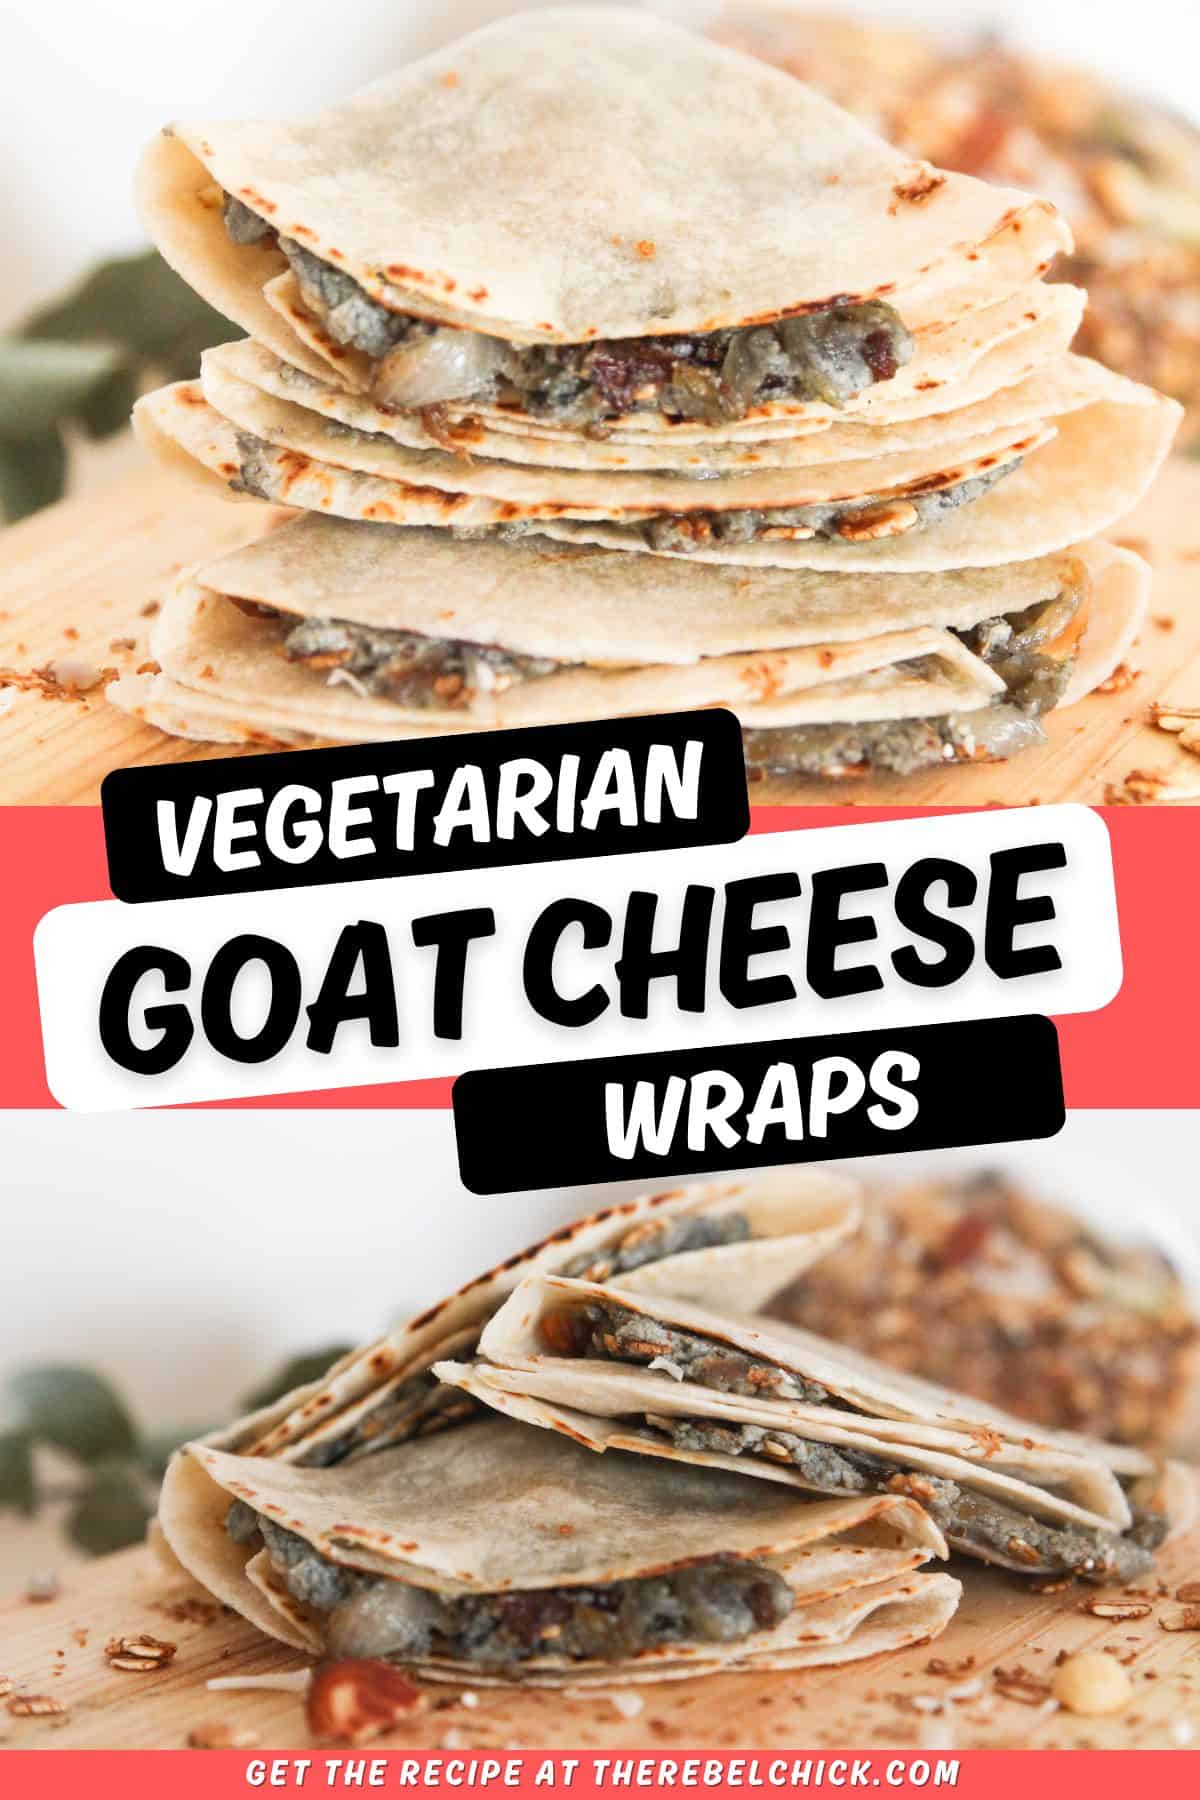 Goat Cheese Wraps